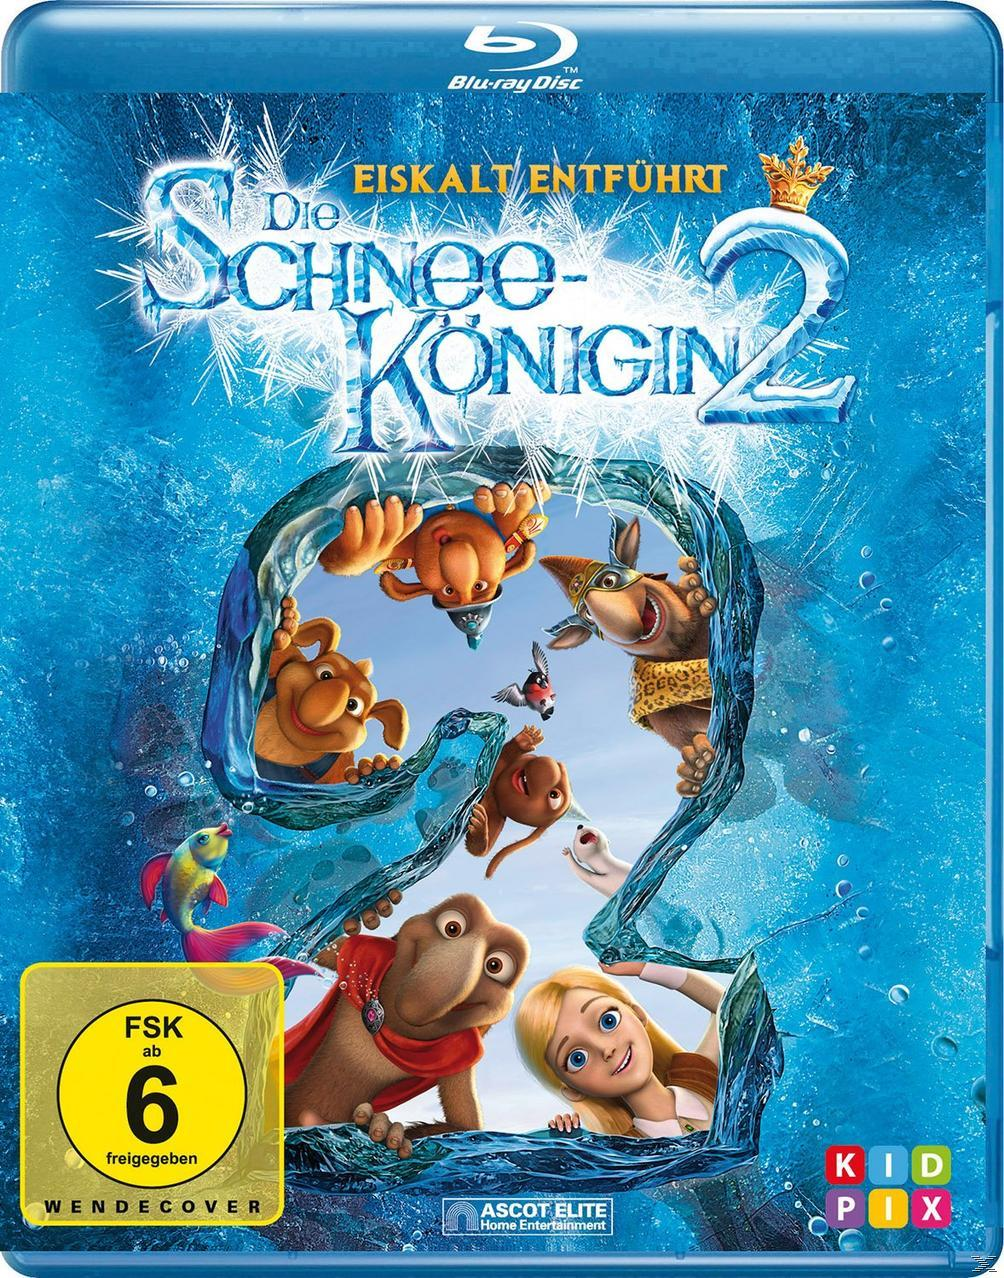 Die Schneekönigin 2 Blu-ray